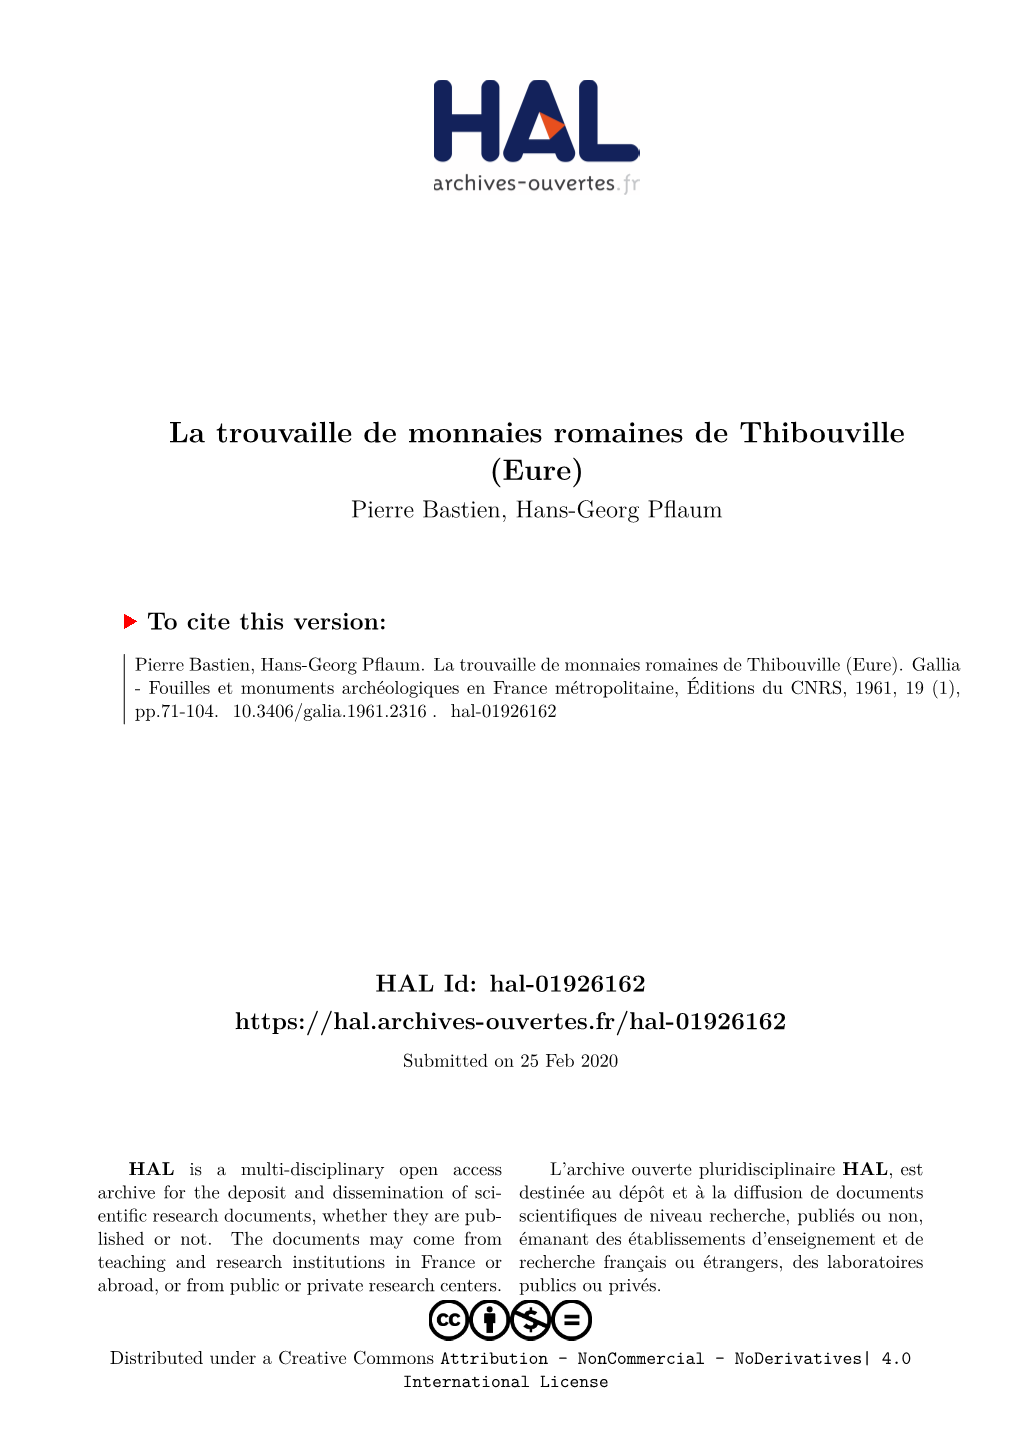 La Trouvaille De Monnaies Romaines De Thibouville (Eure) Pierre Bastien, Hans-Georg Pflaum